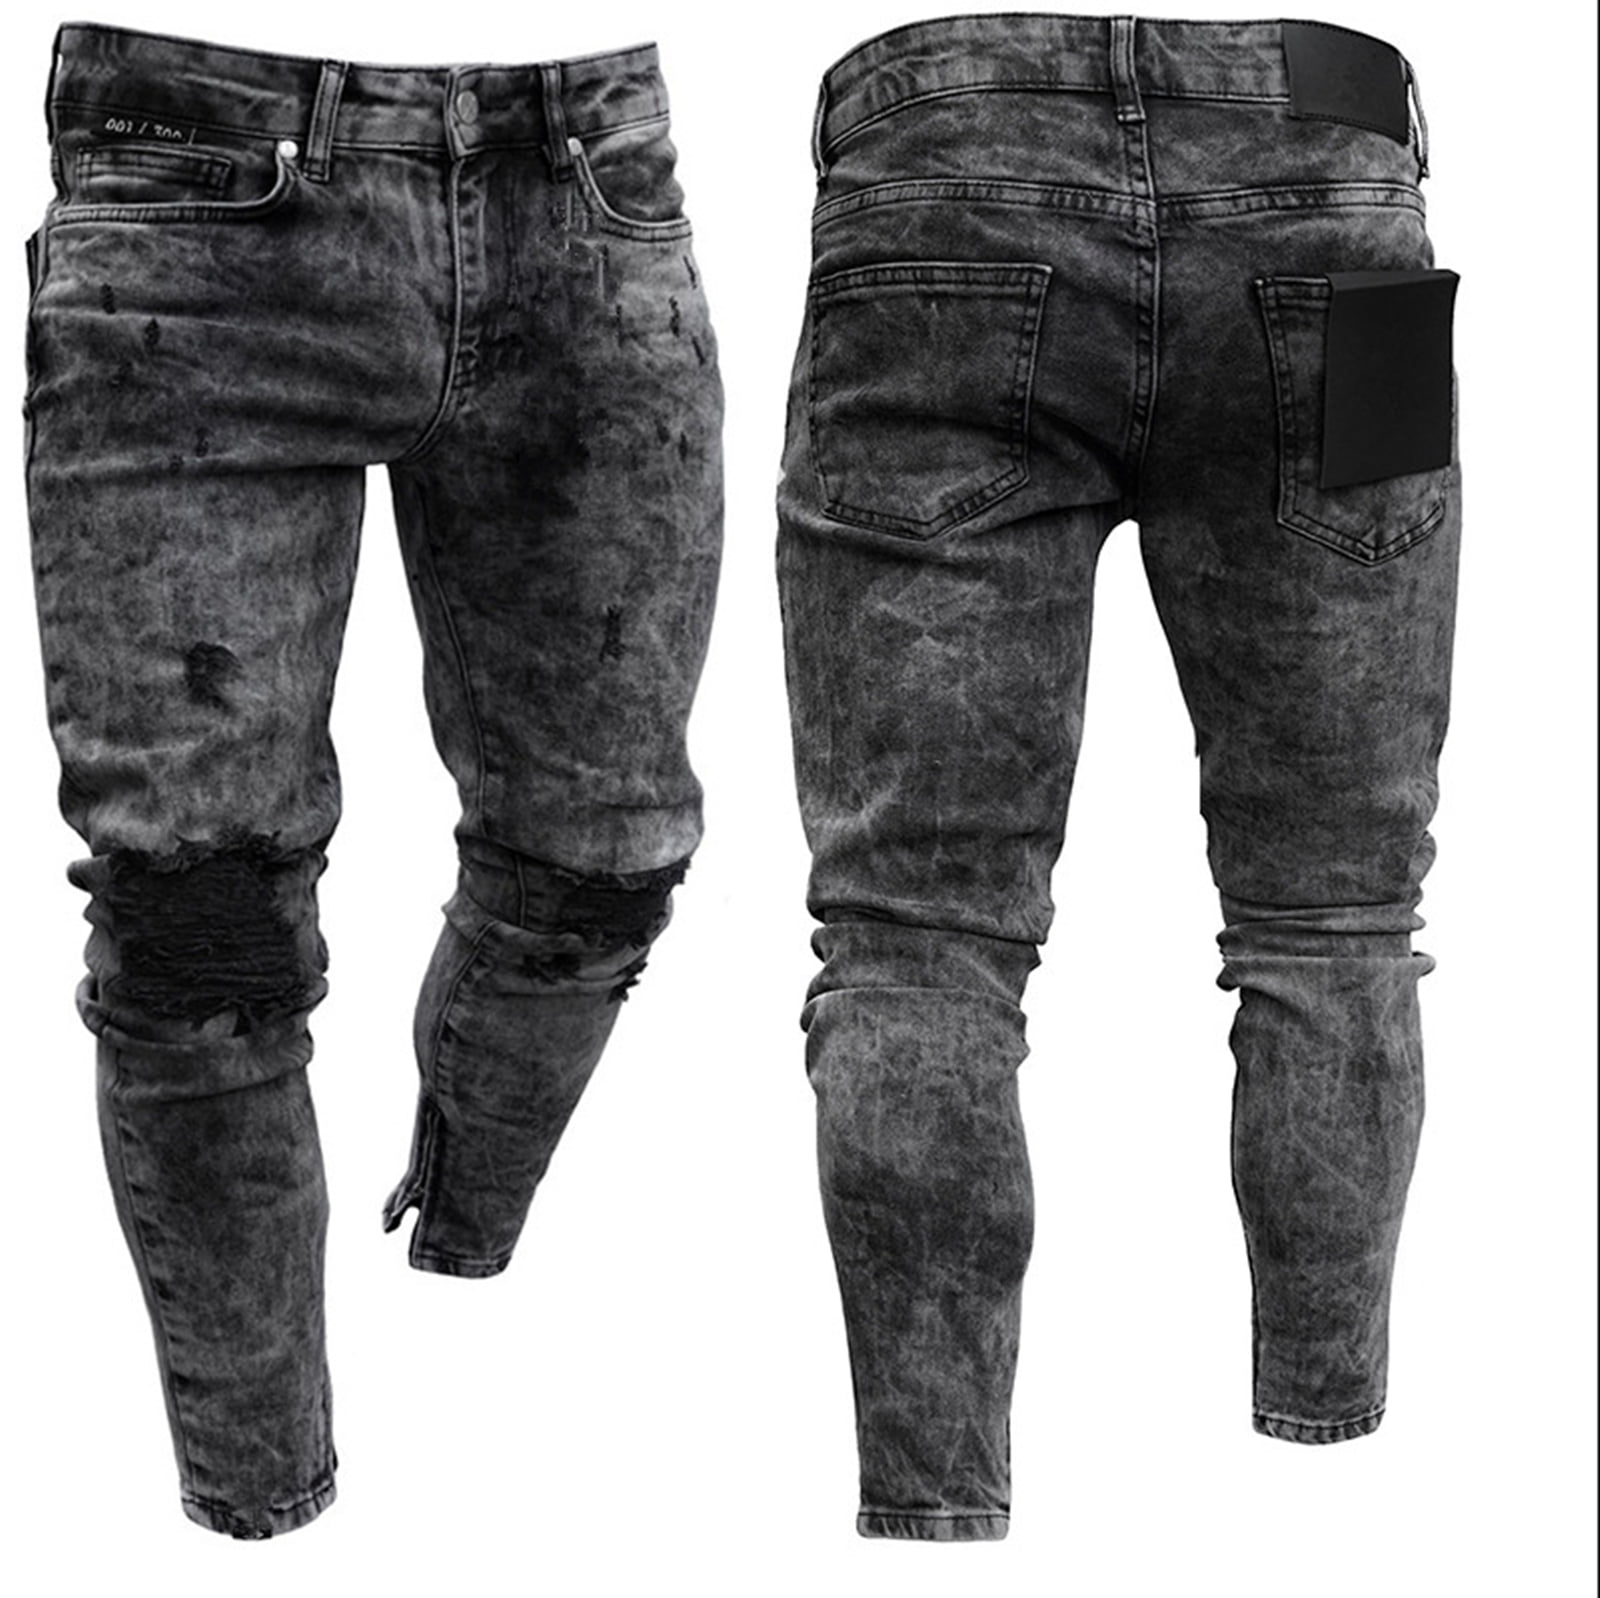 Bukser uudgrundelig Tidligere CHERALKEST Men's Biker Skinny Ripped Jeans Black Stretch Leg Zipper Denim  Pants - Walmart.com